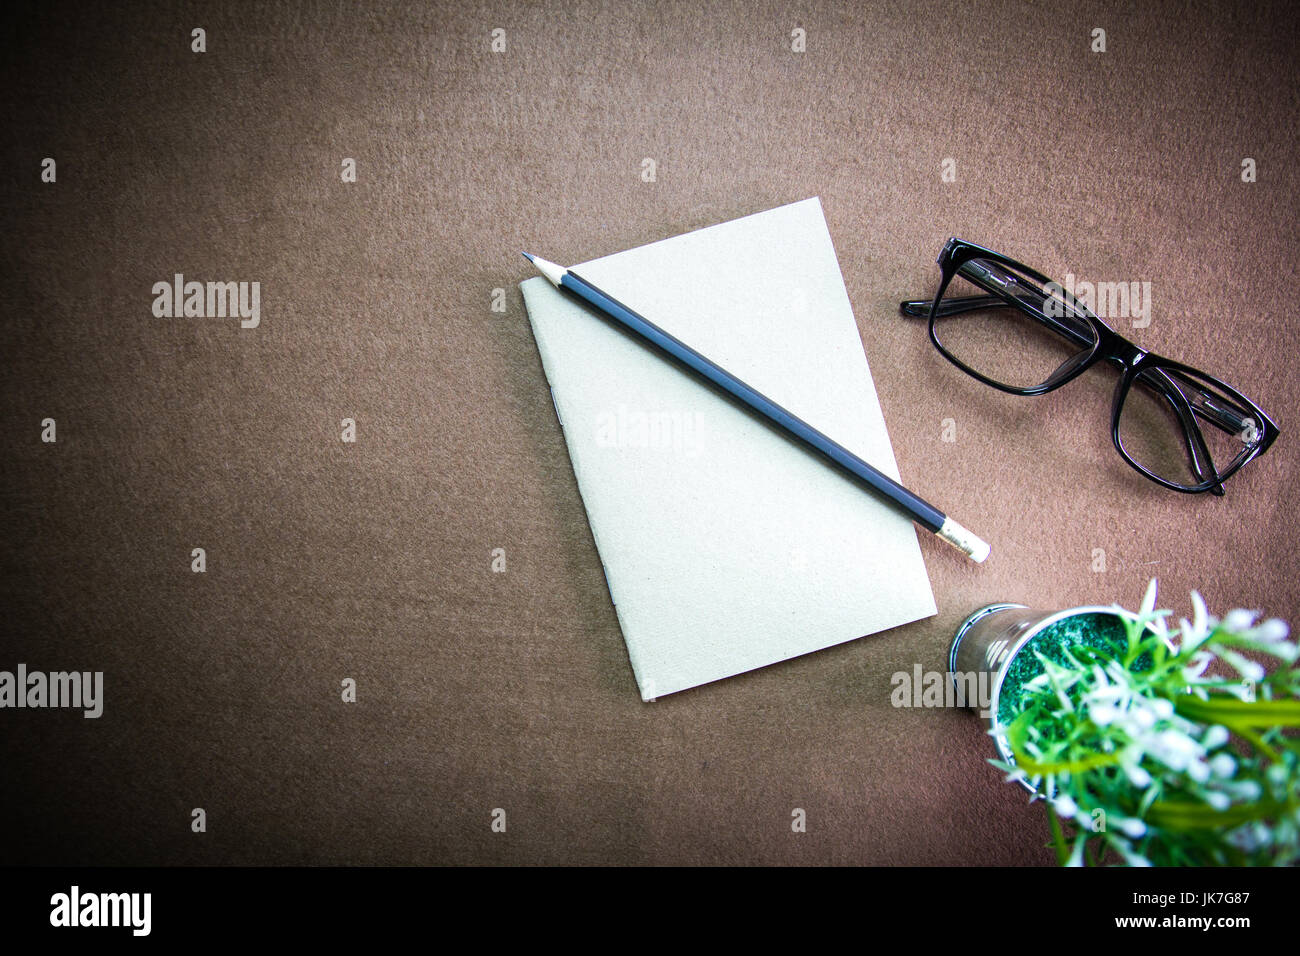 Gli accessori business sul desktop: notebook,matita, bicchieri. Con vignette Foto Stock